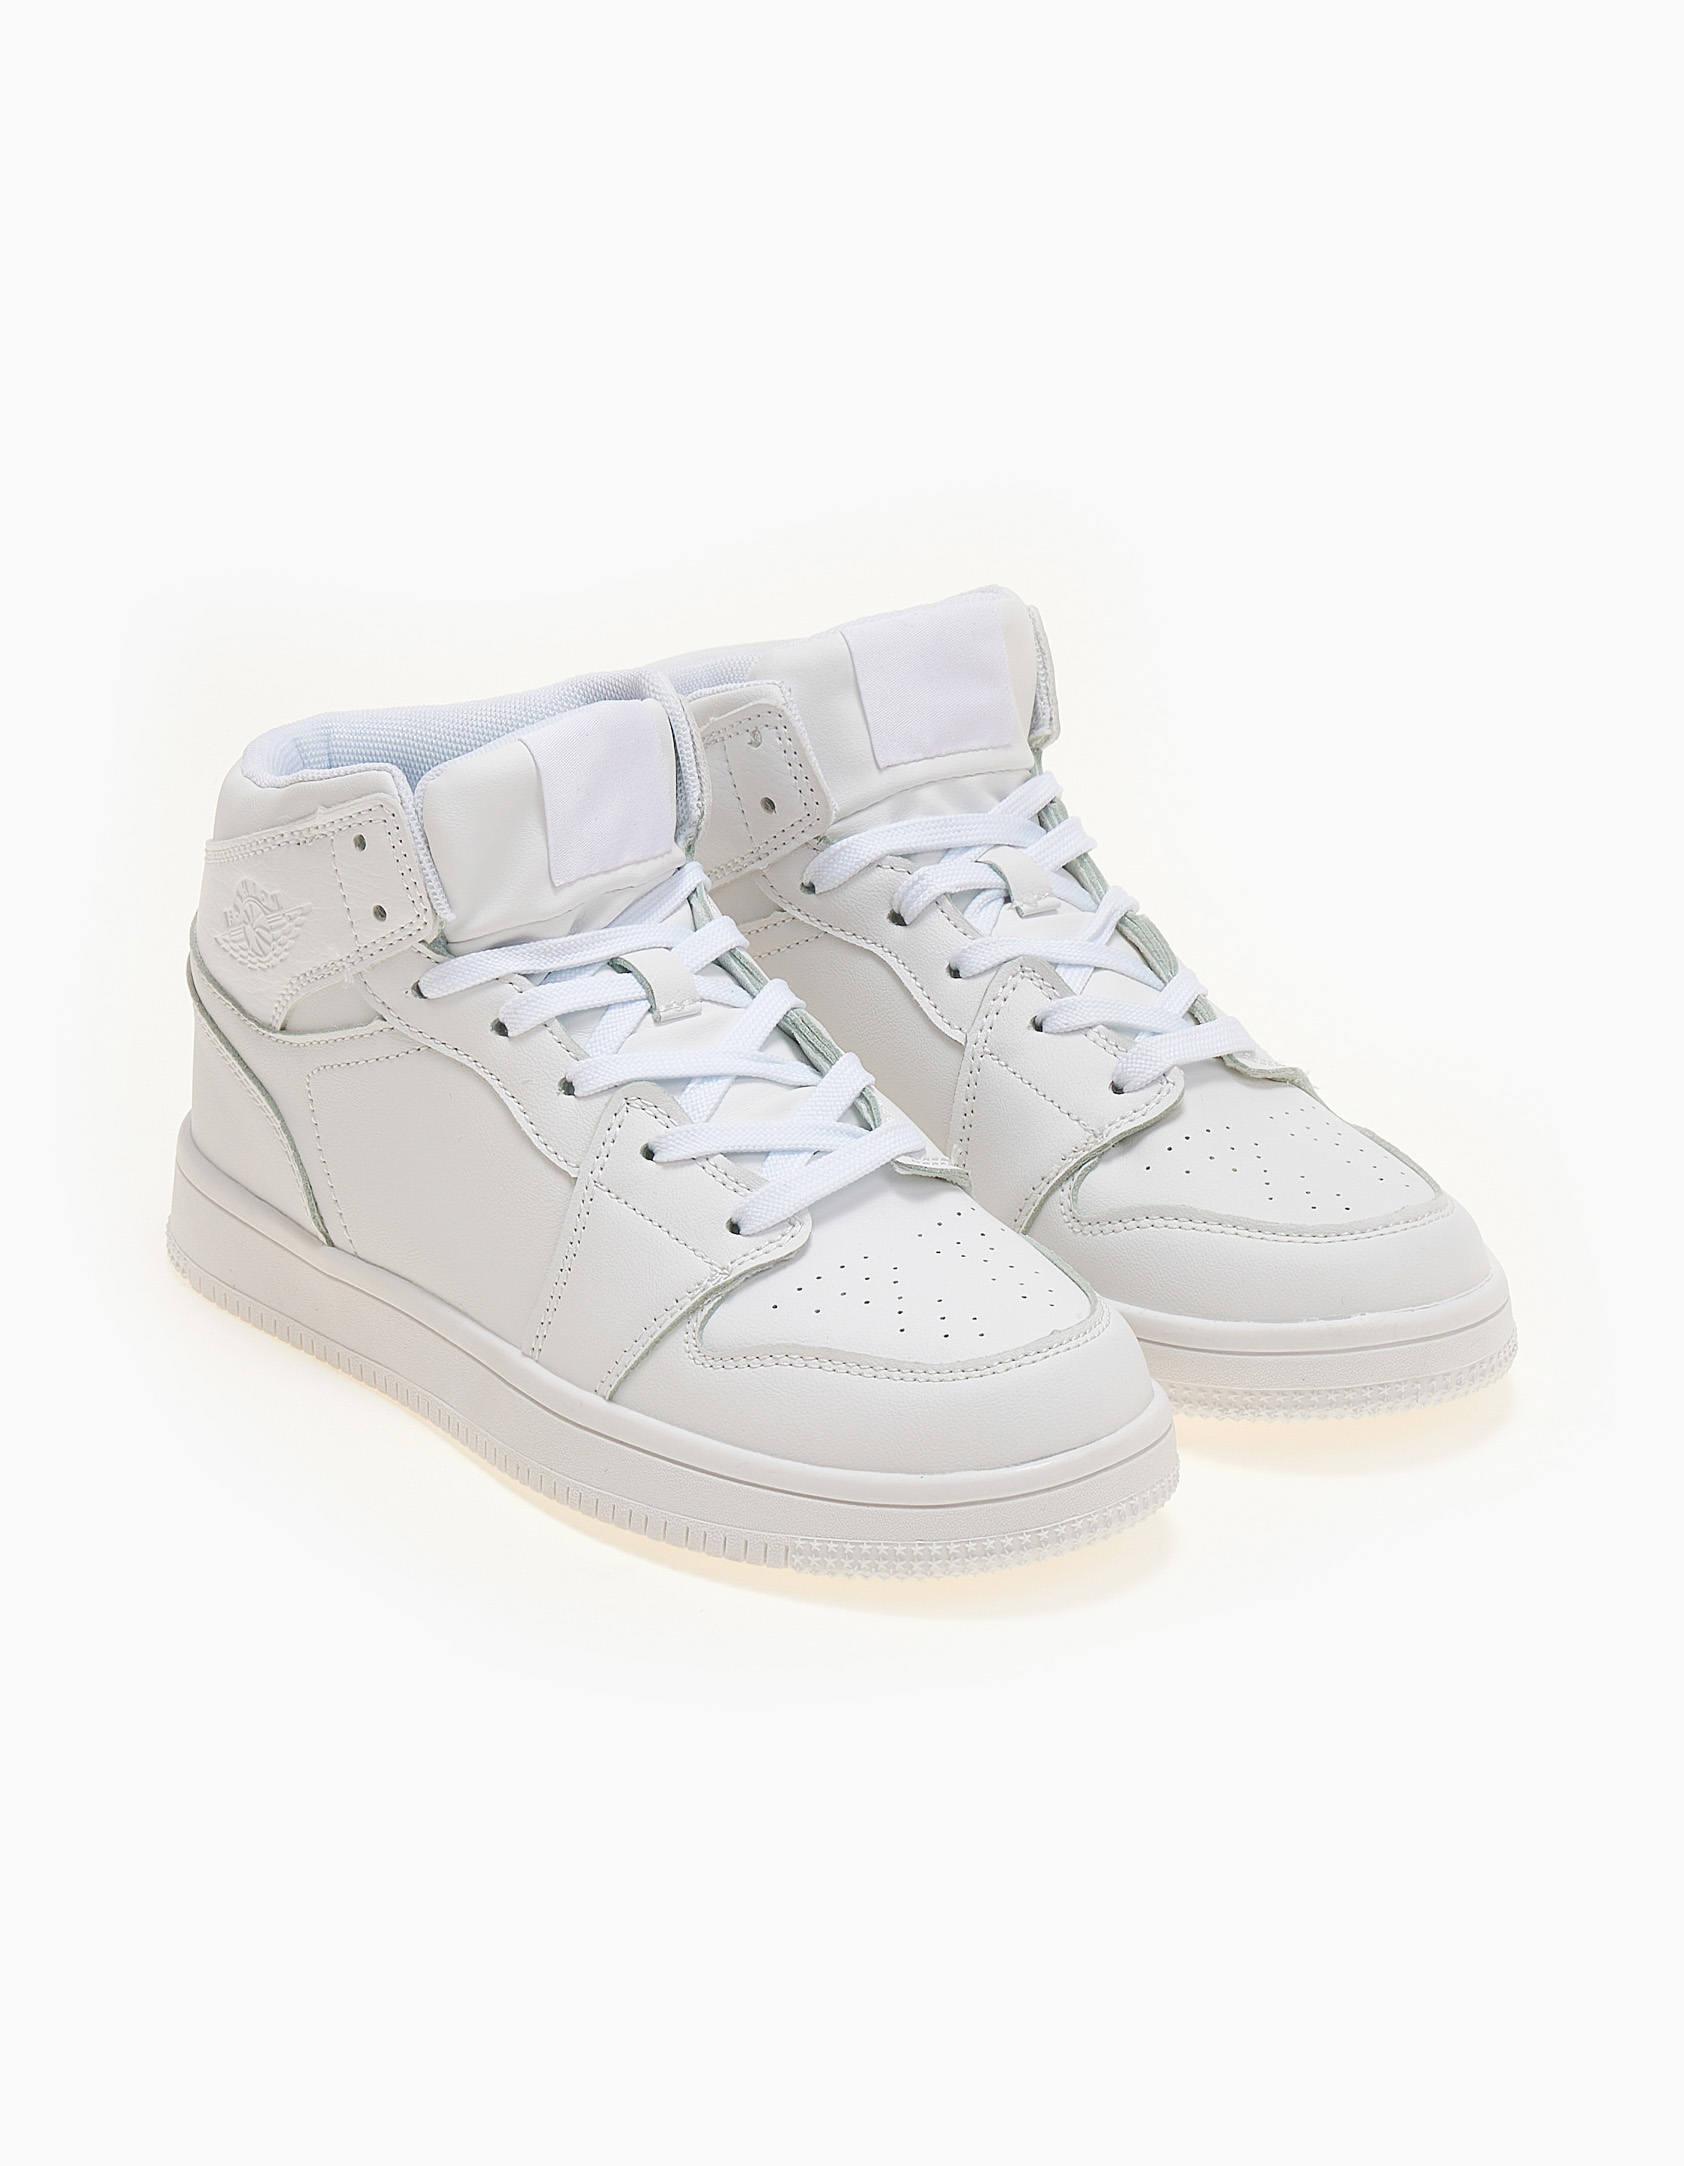 Παπούτσια > Sneakers Sneakers μποτάκια λευκά με κορδόνια - Λευκό